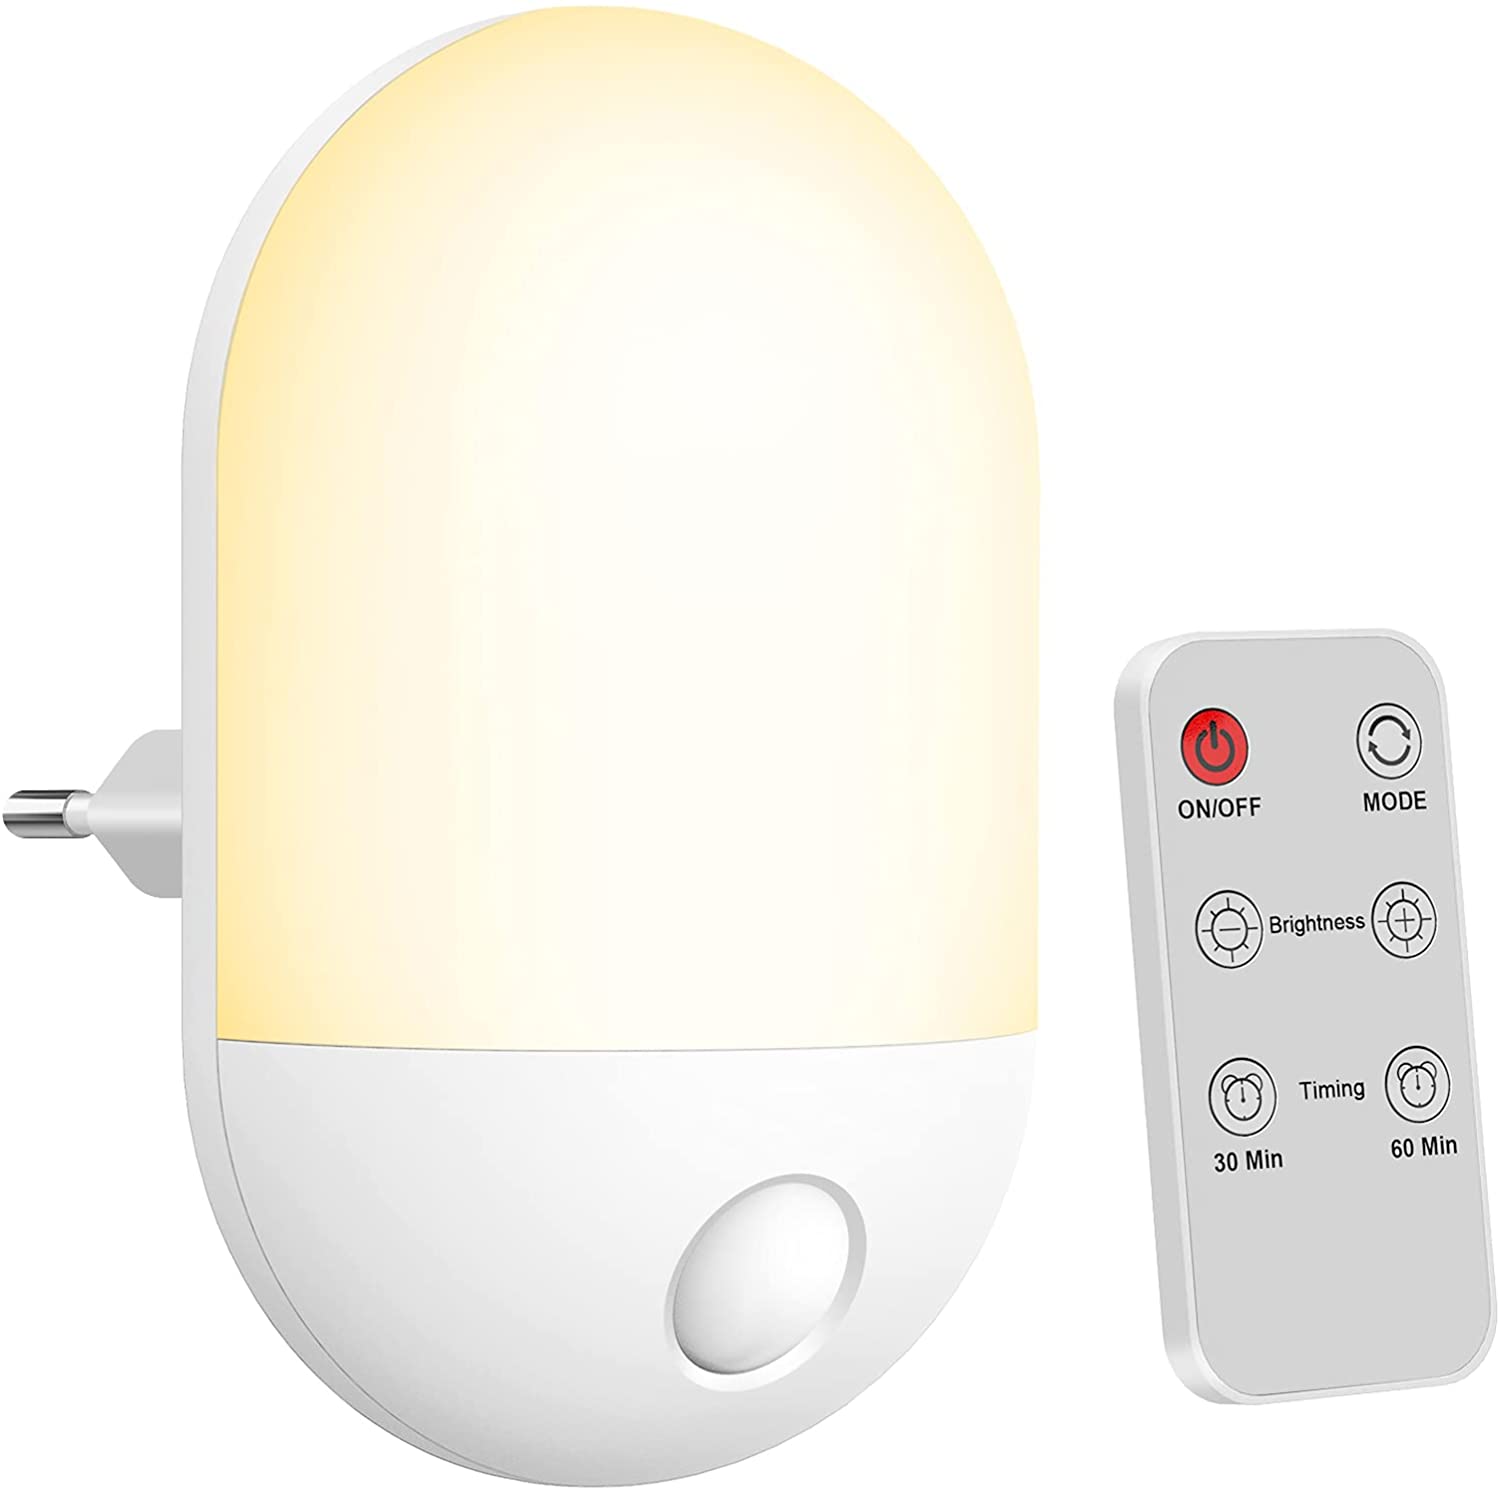 Luce notturna per bambini telecomandata con funzione timer, luca calda e bianca con tre livelli di luminosità regolabili